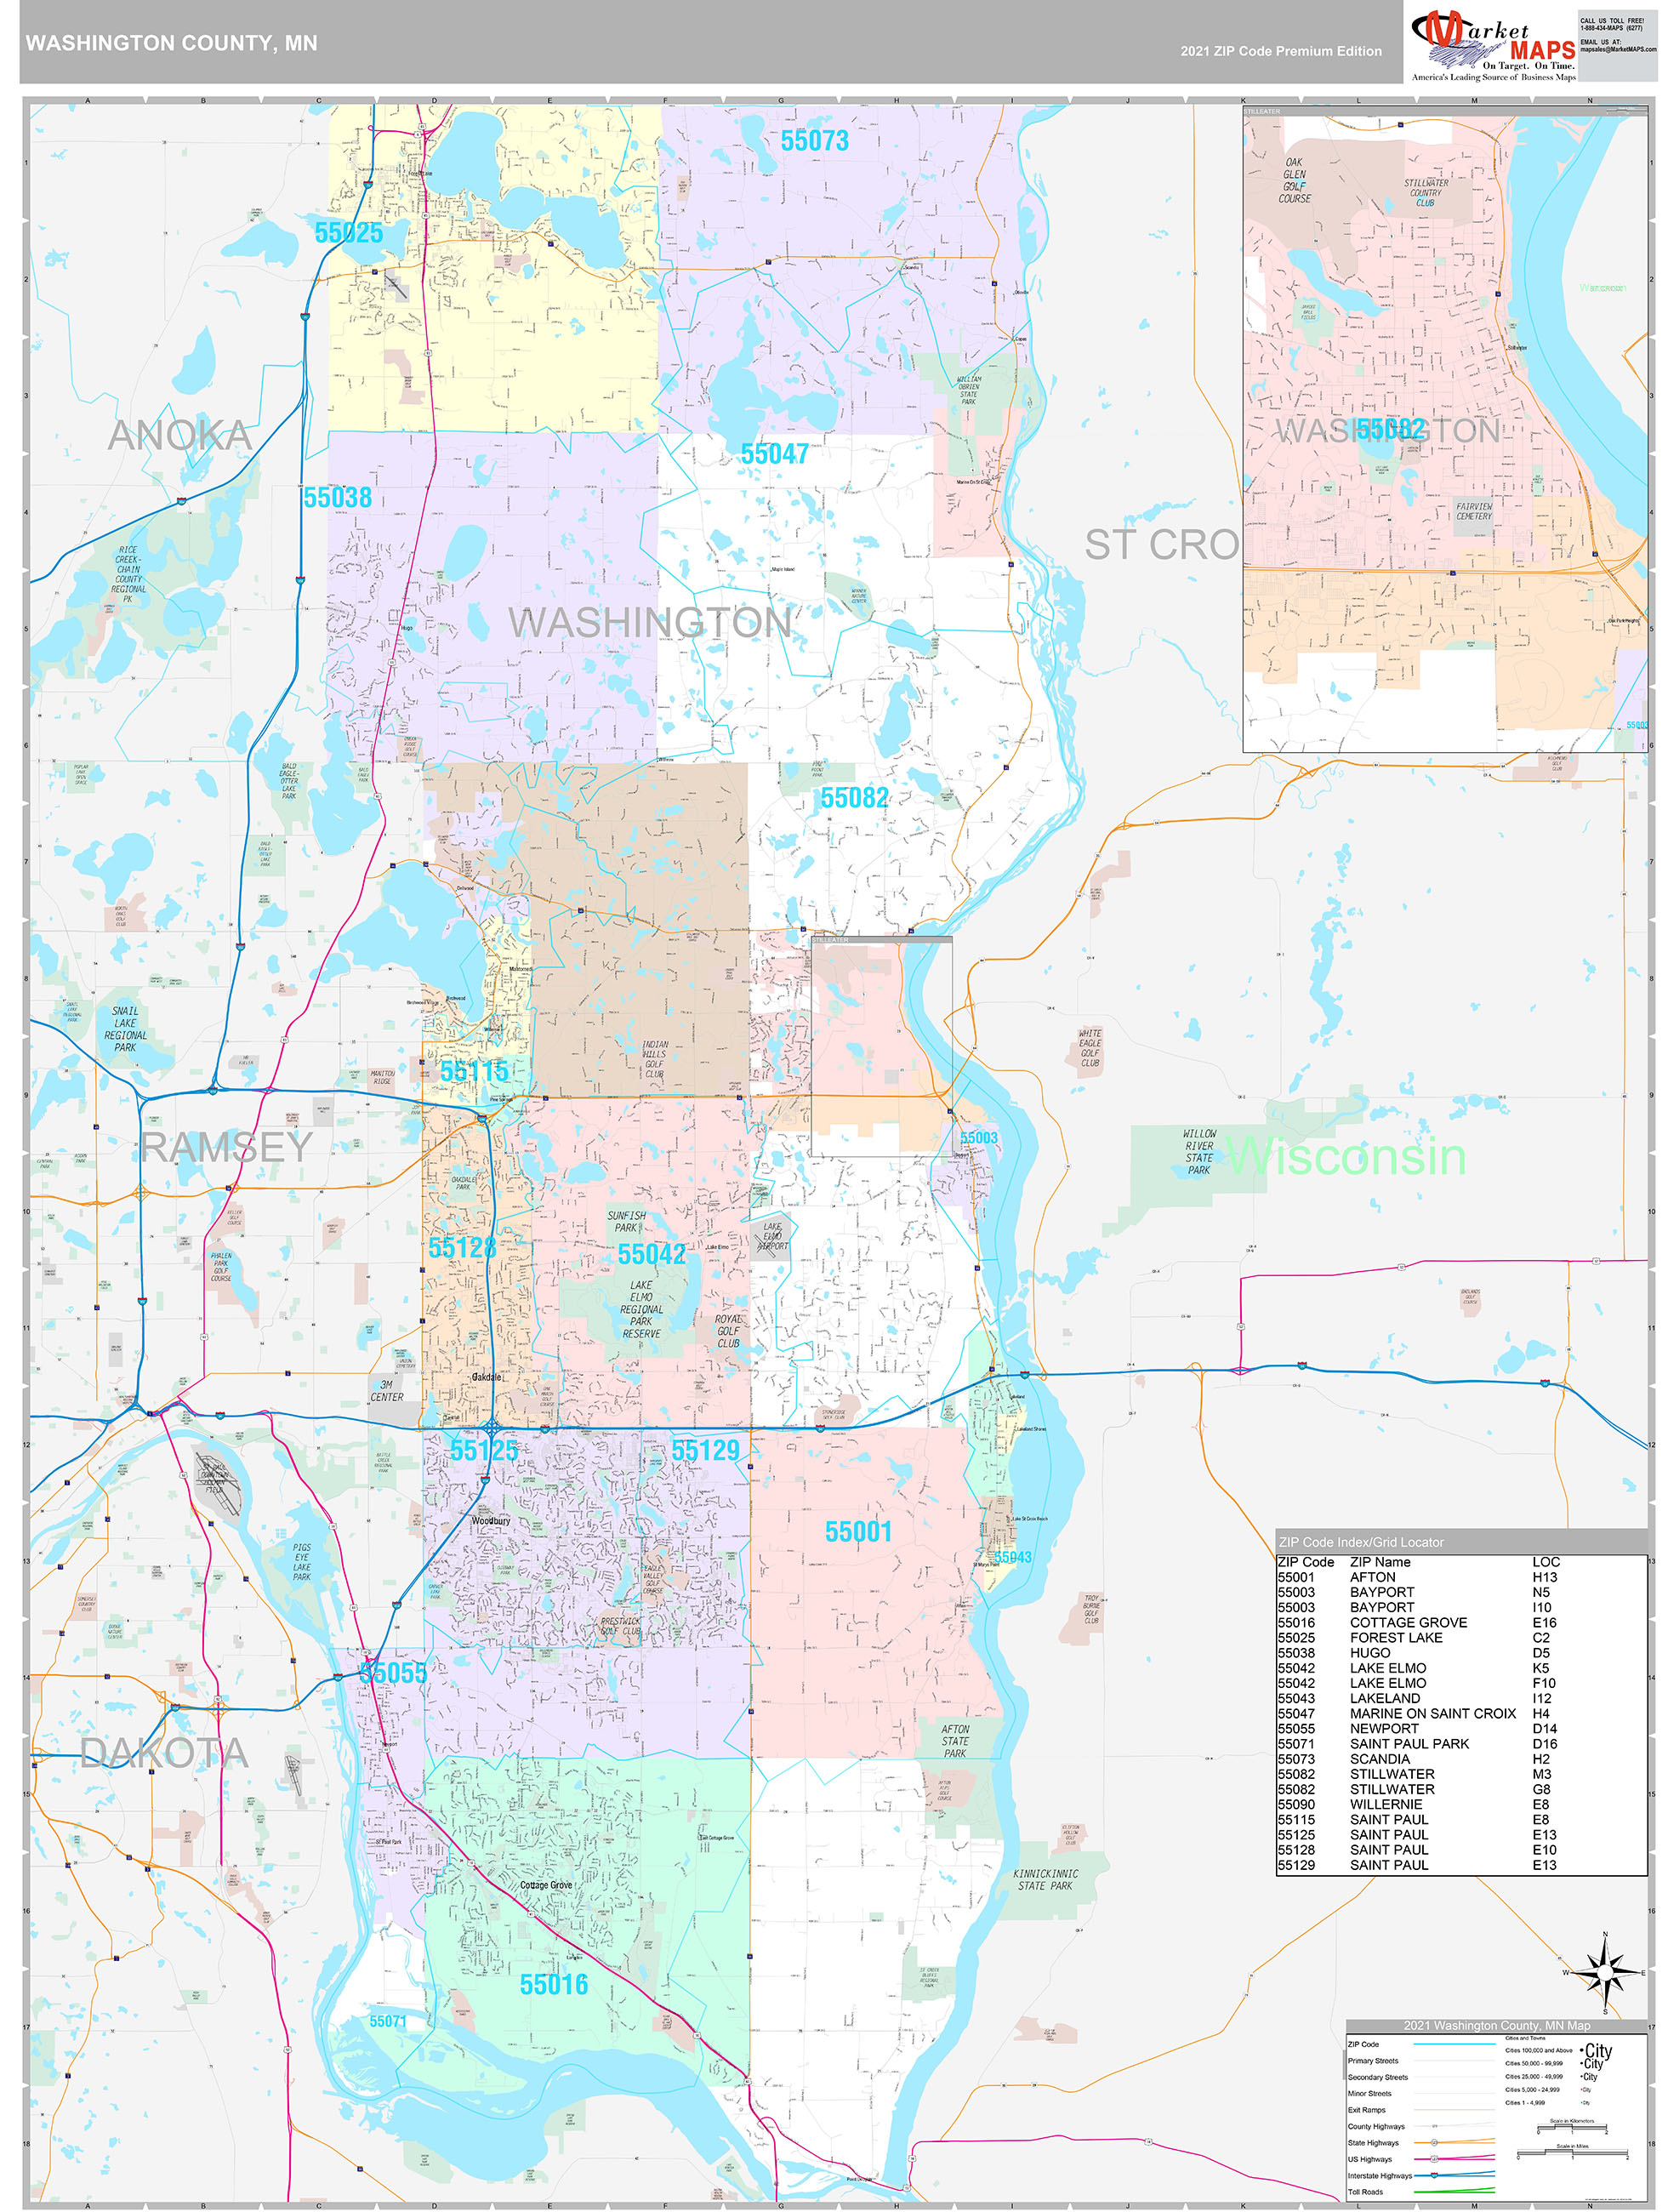 Washington County MN Wall Map Premium Style by MarketMAPS MapSales